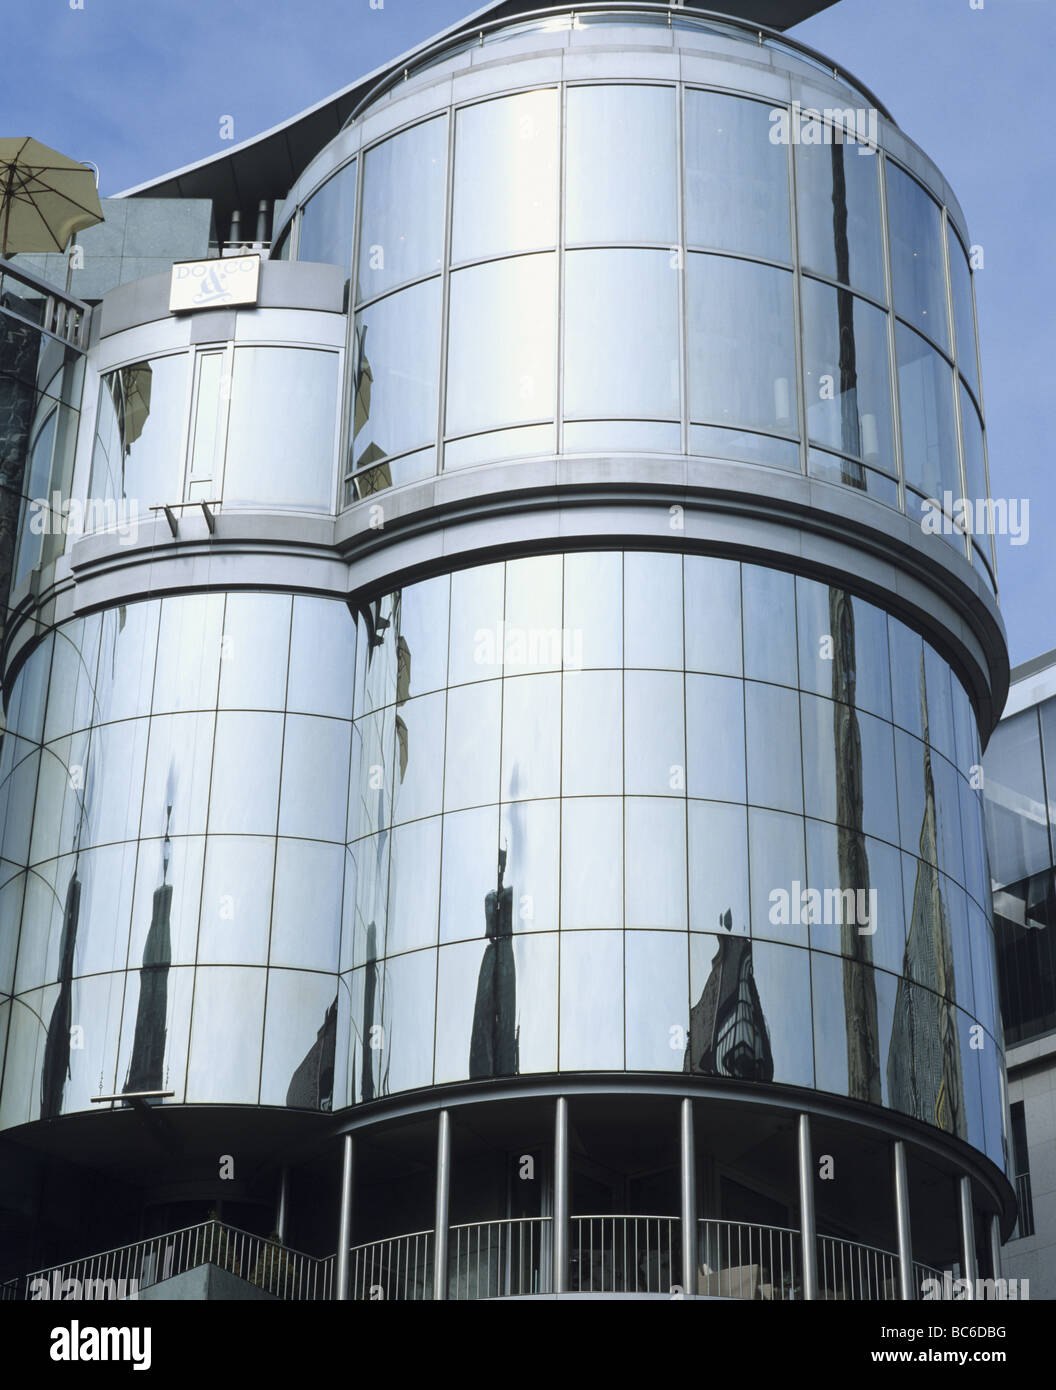 Immeuble de bureaux modernes, Vienne Autriche Banque D'Images